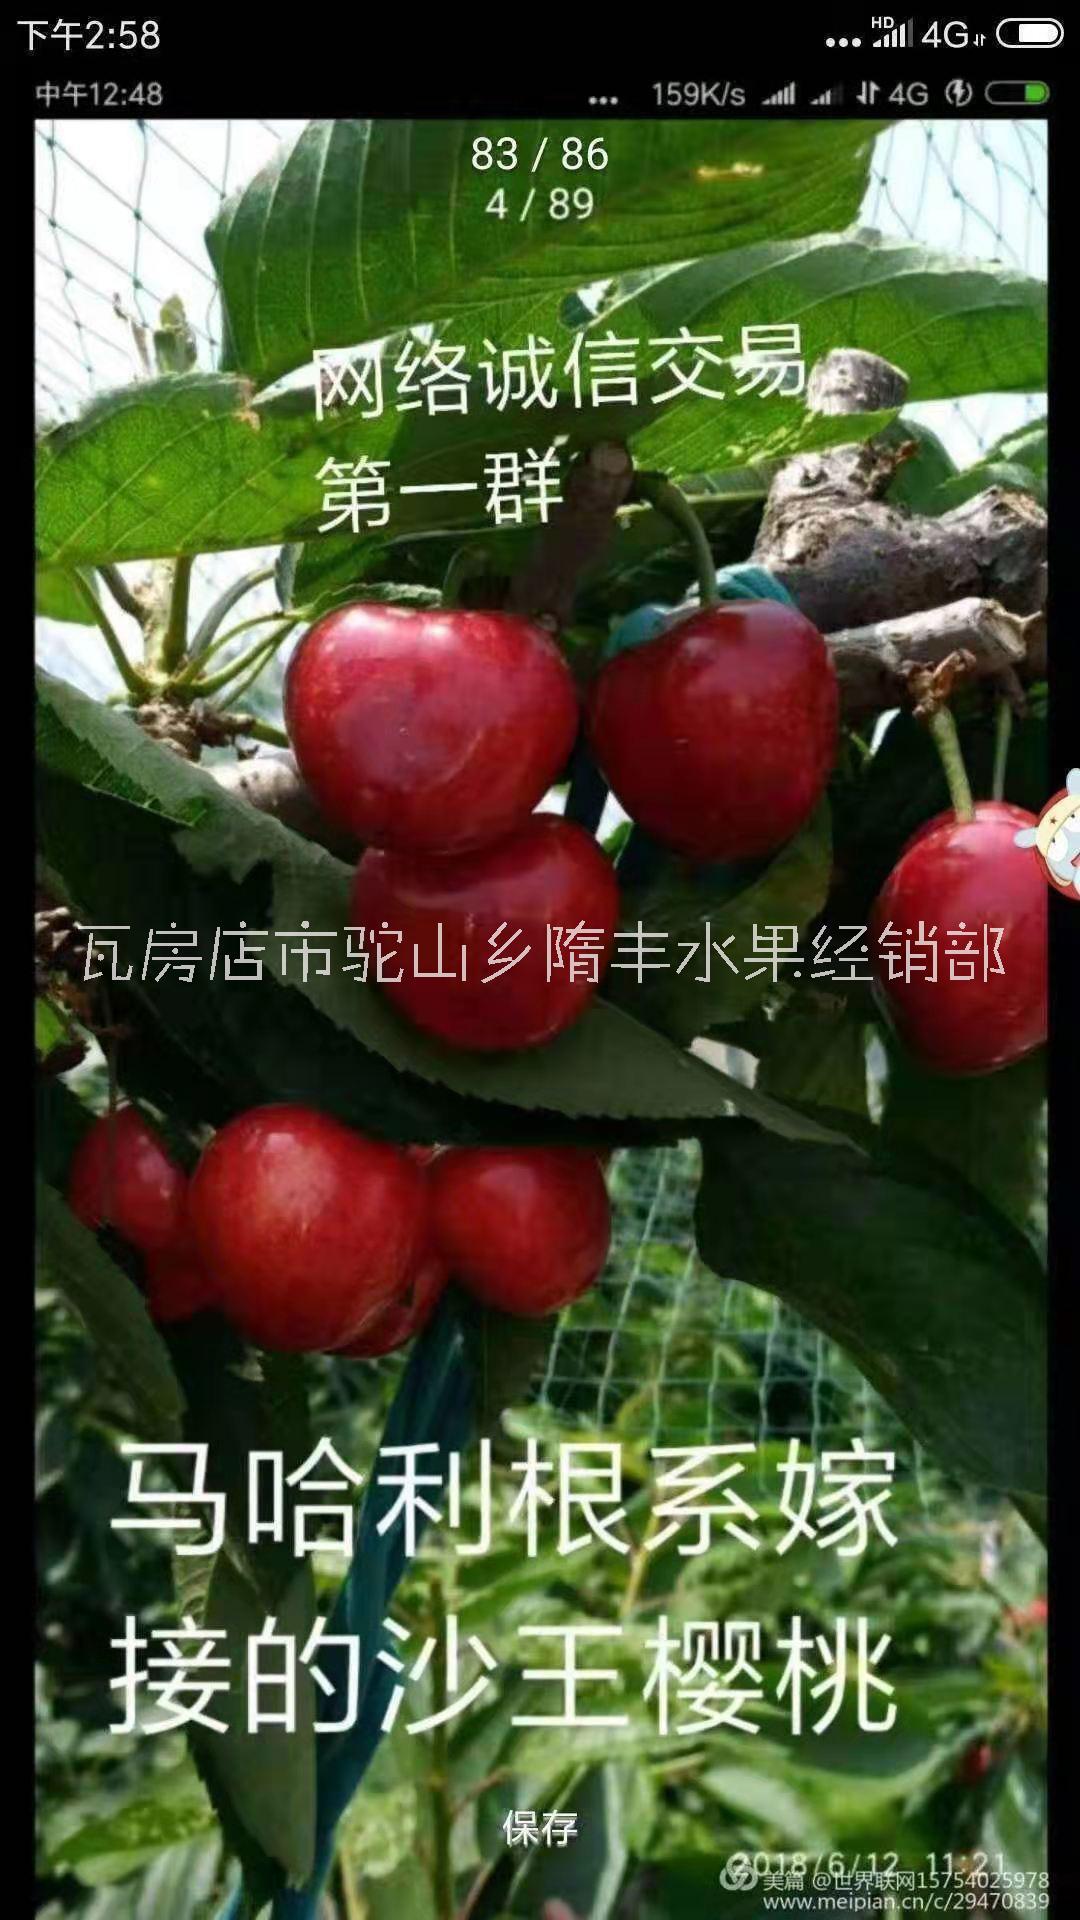 哈尔滨市批发新鲜沙王樱桃 沙王樱桃批发商 大量种植大樱桃